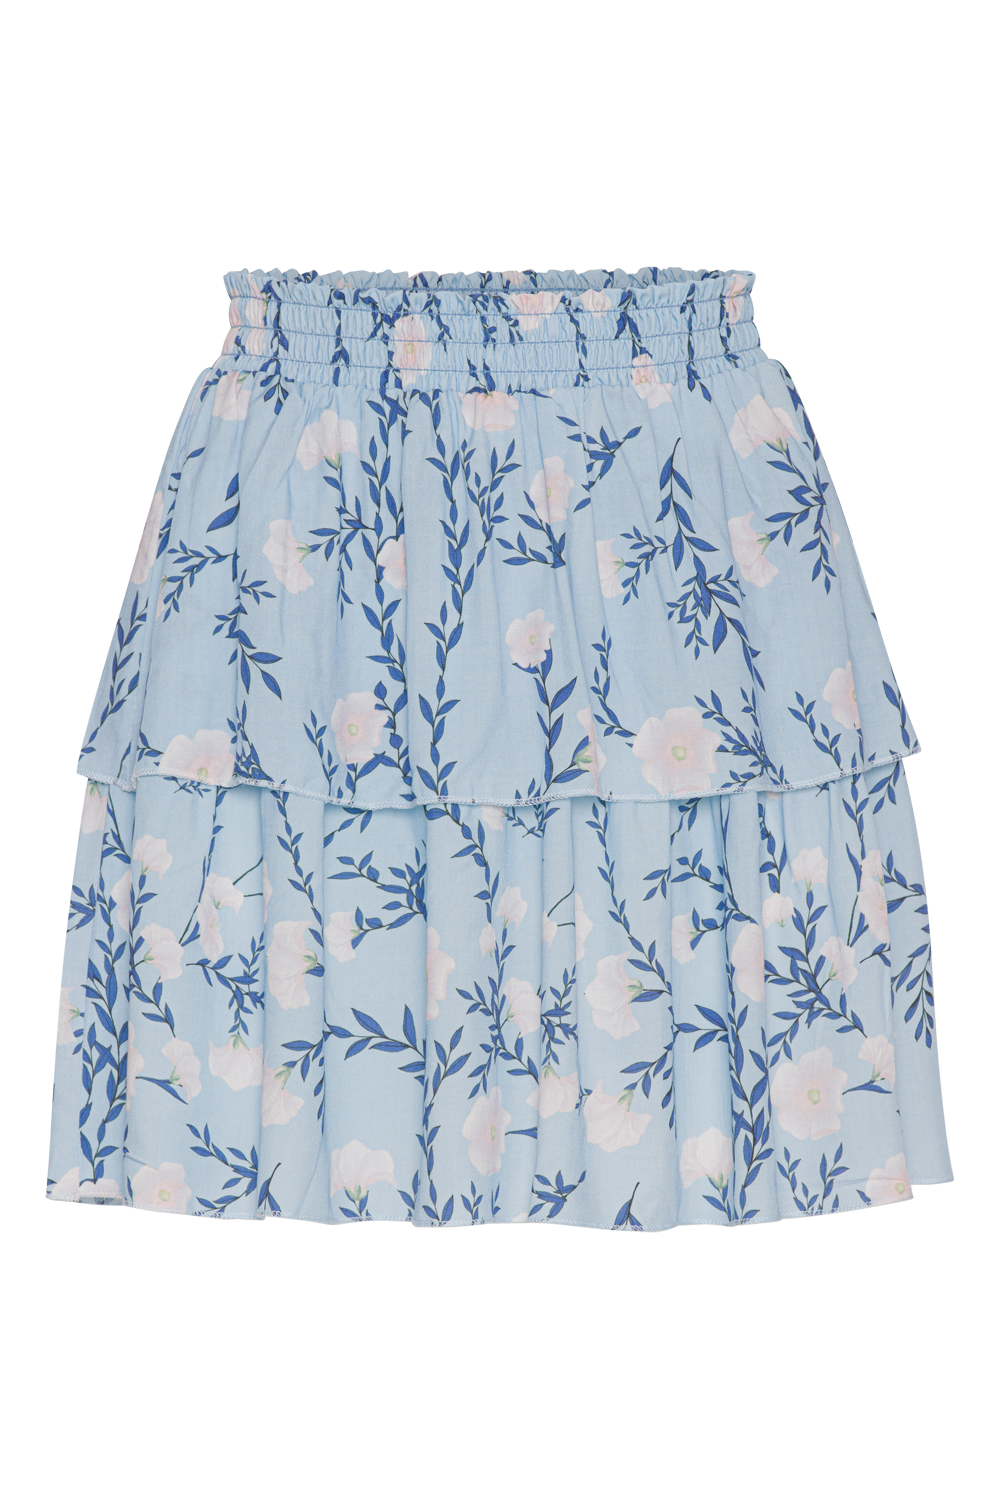 Sally Short Skirt Light Blue Flower